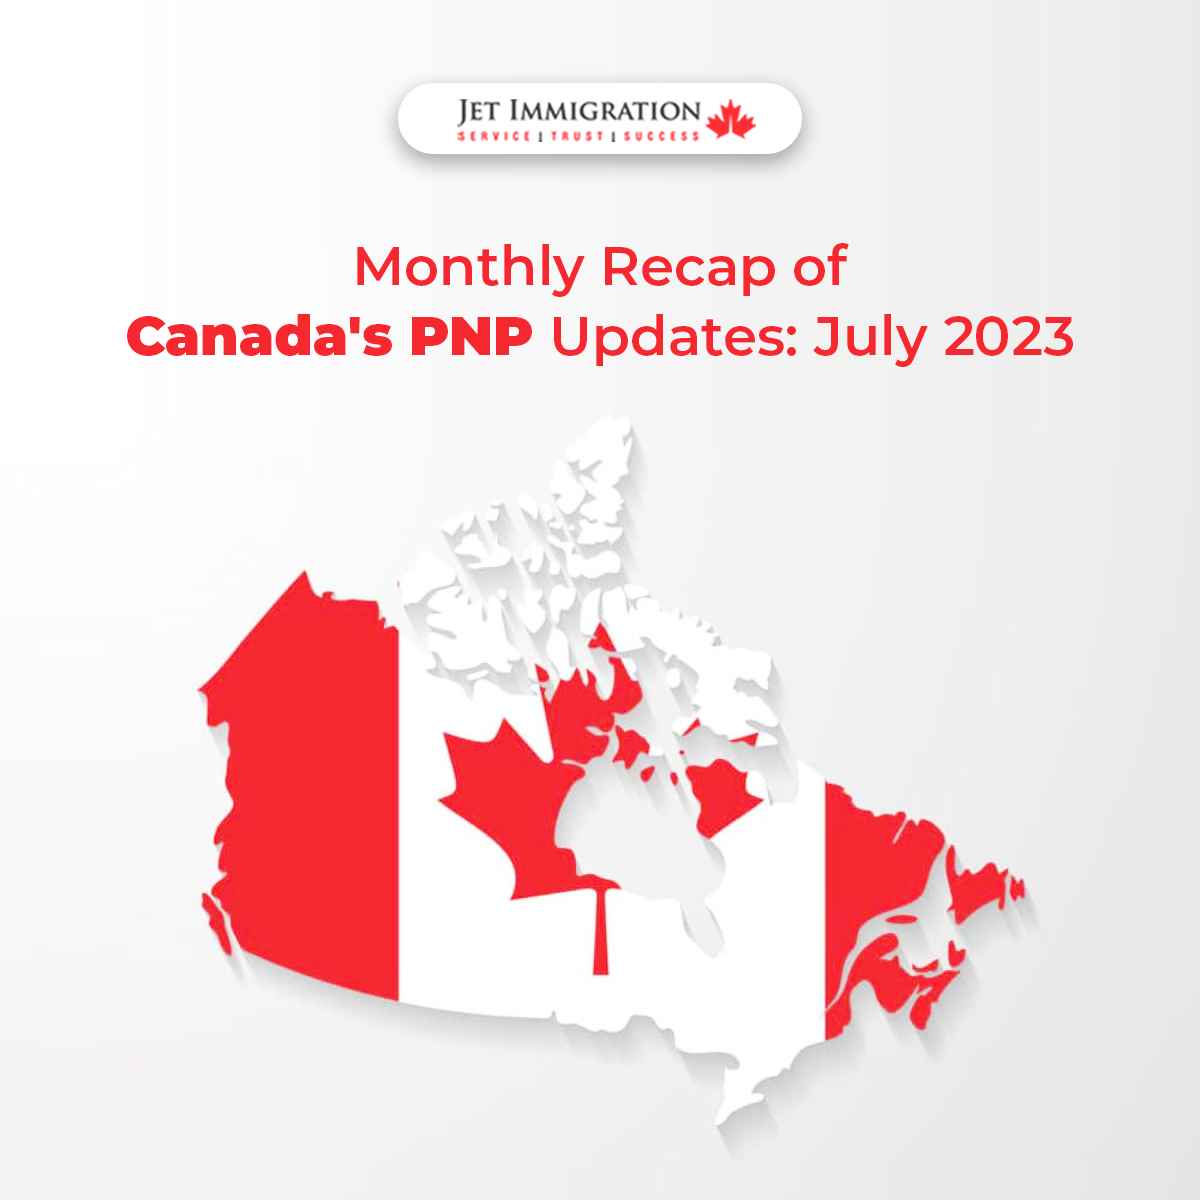 Monthly Recap of Canada’s PNP Updates: July 2023